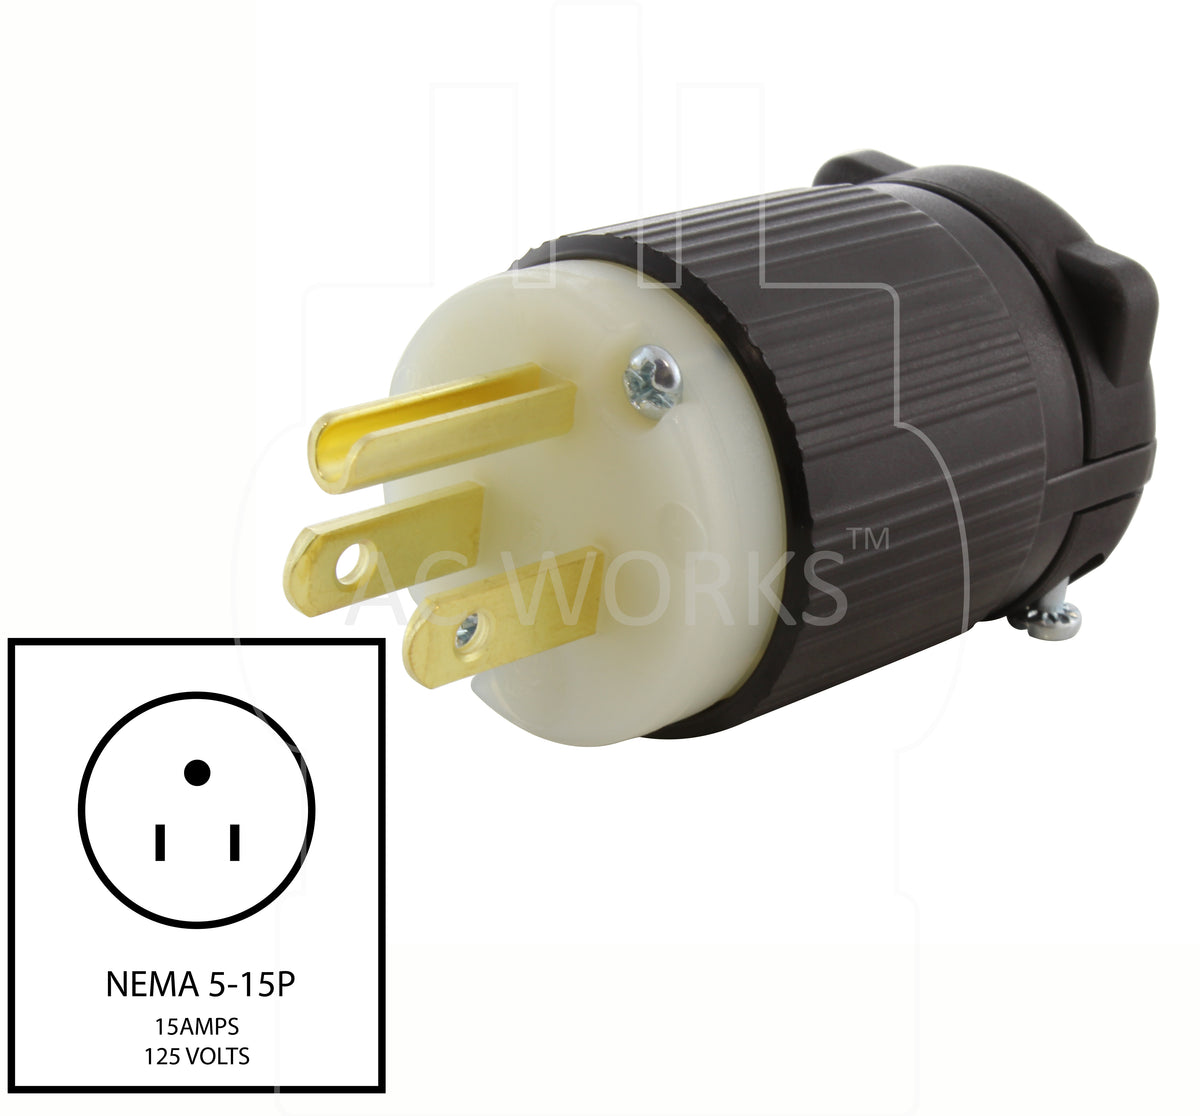 AC WORKS® NEMA 5-15P 15A 125V Household Plug With UL, C-UL Safety